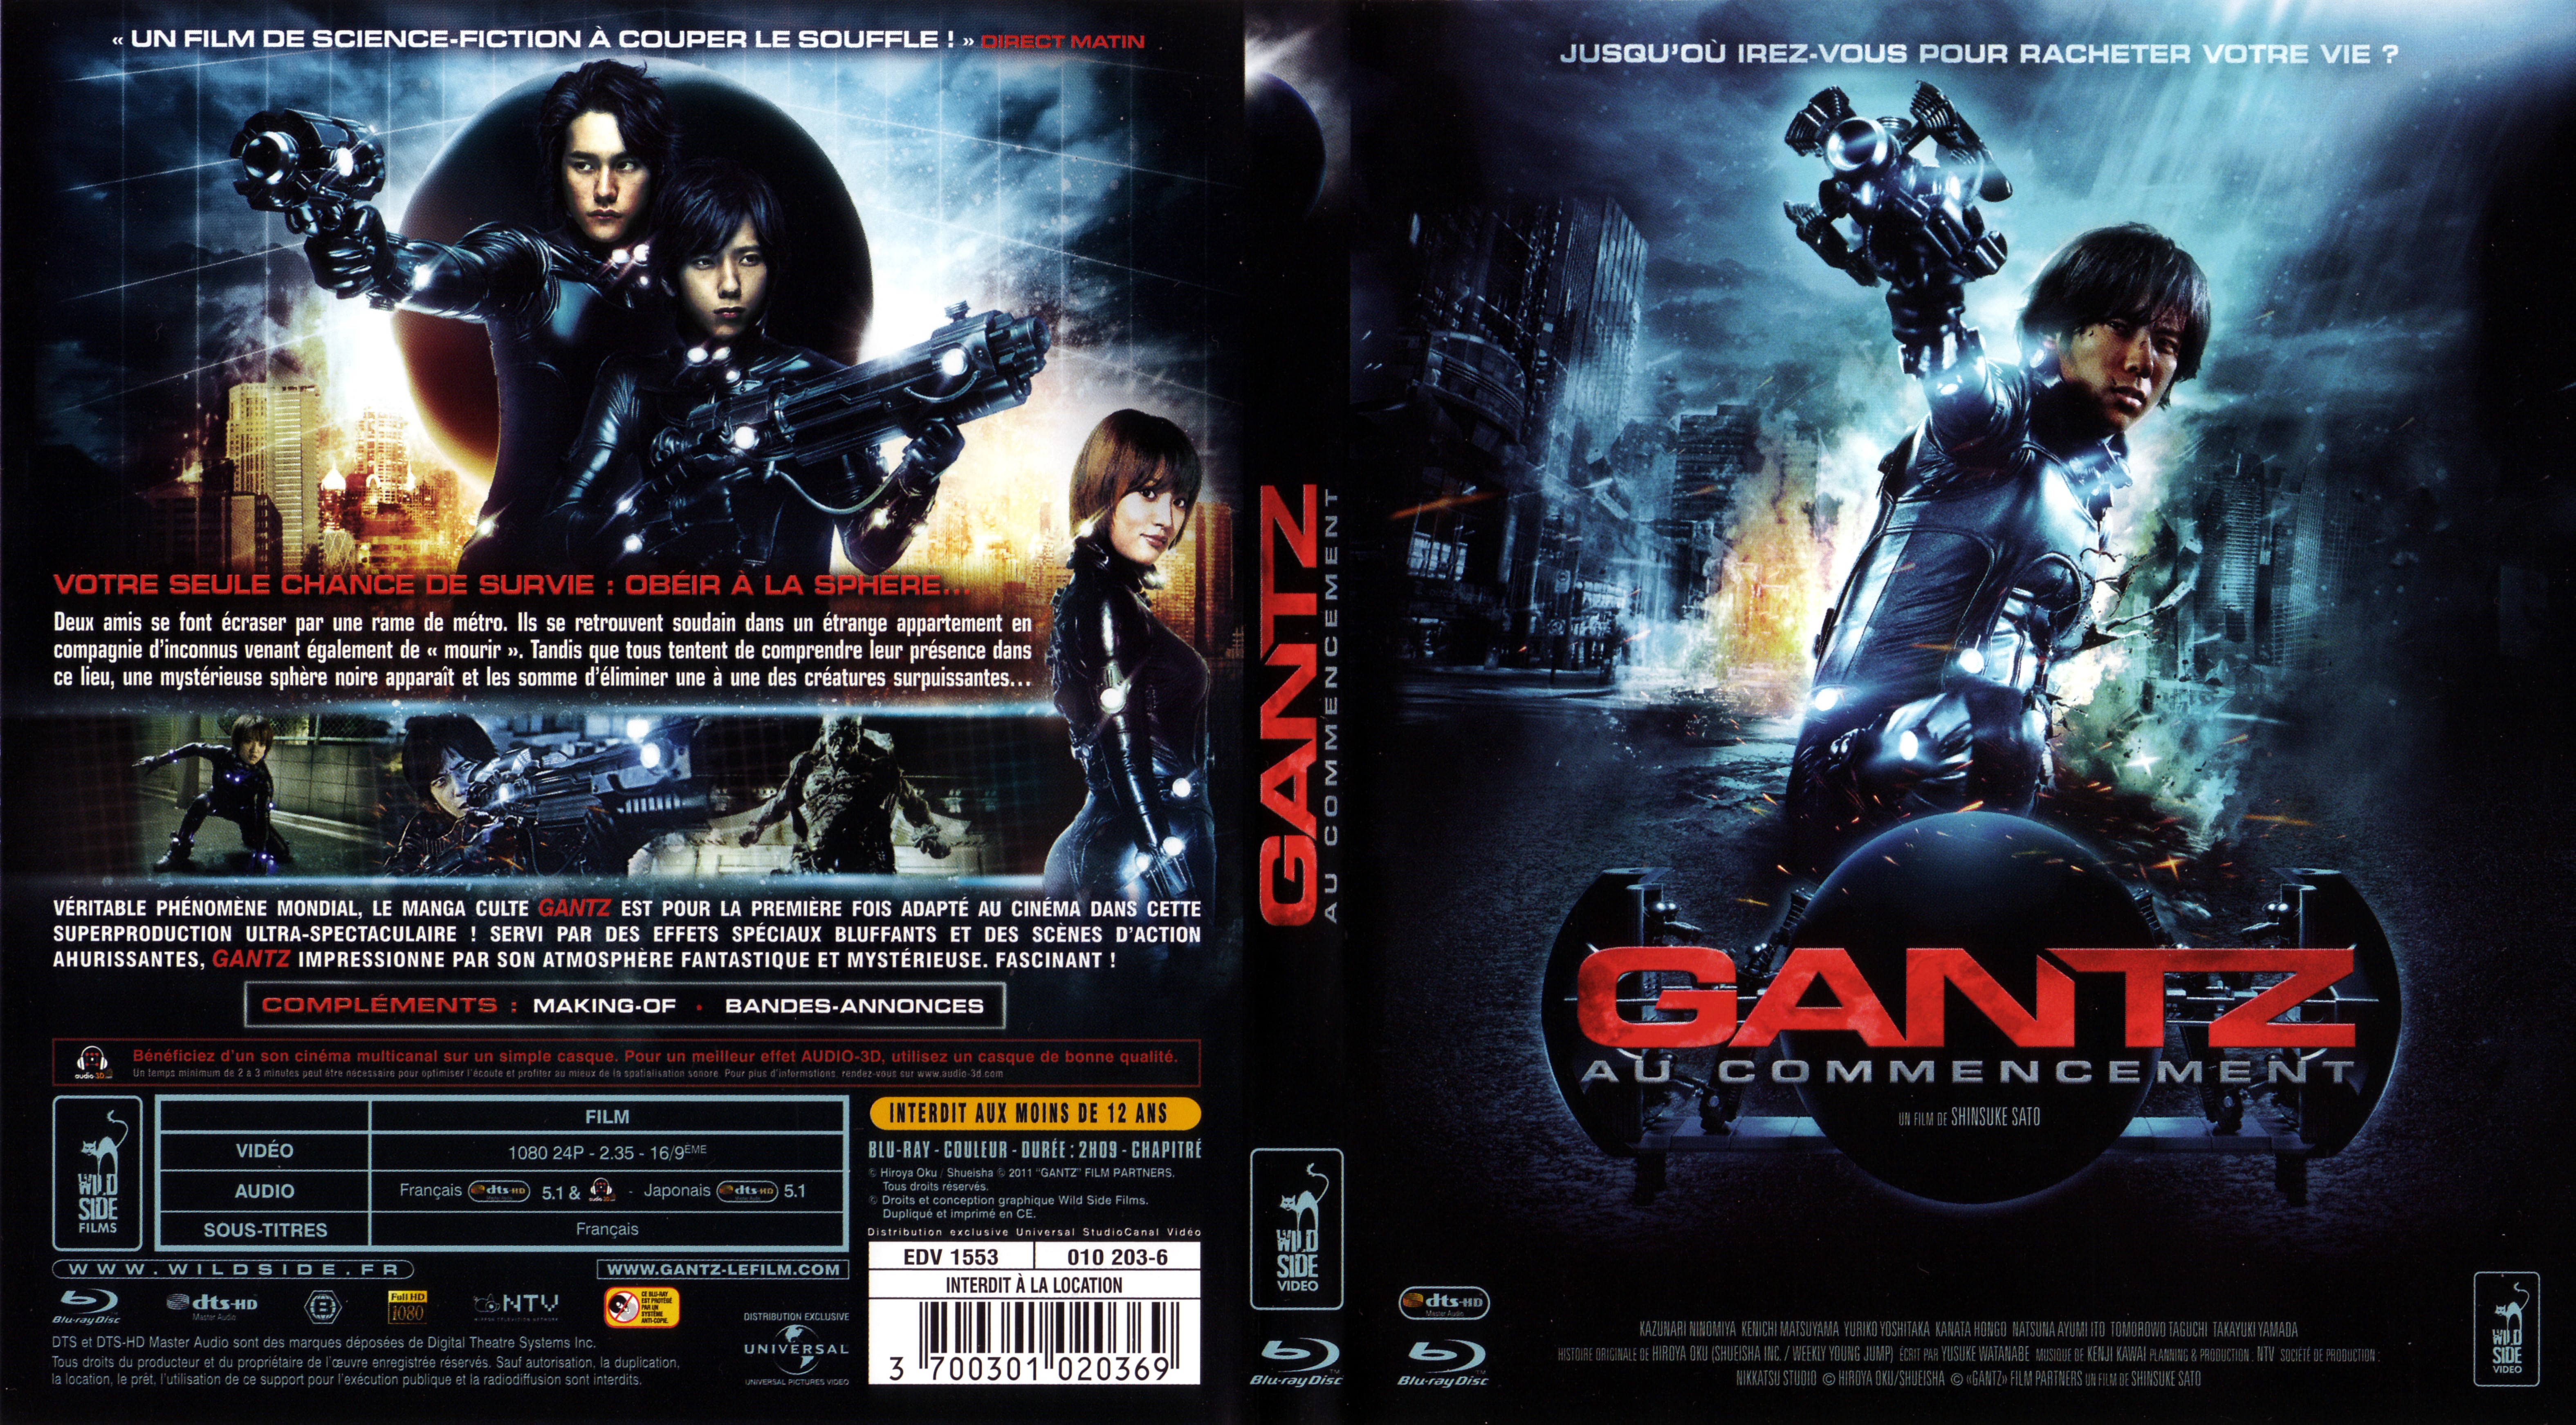 Jaquette DVD Gantz au commencement (BLU-RAY) v2